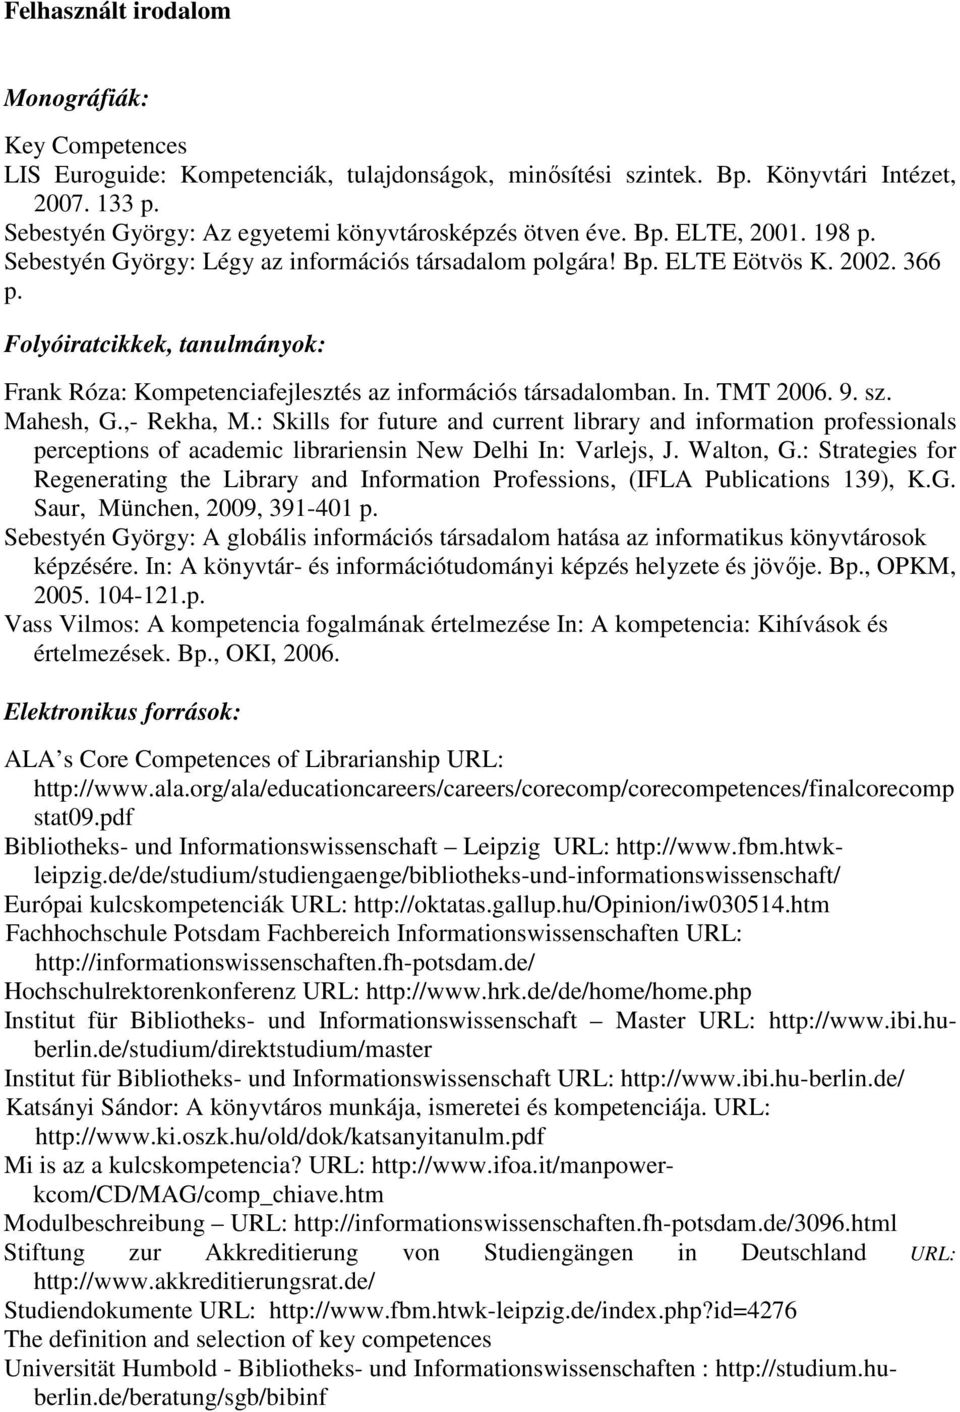 Folyóiratcikkek, tanulmányok: Frank Róza: Kompetenciafejlesztés az információs társadalomban. In. TMT 2006. 9. sz. Mahesh, G.,- Rekha, M.